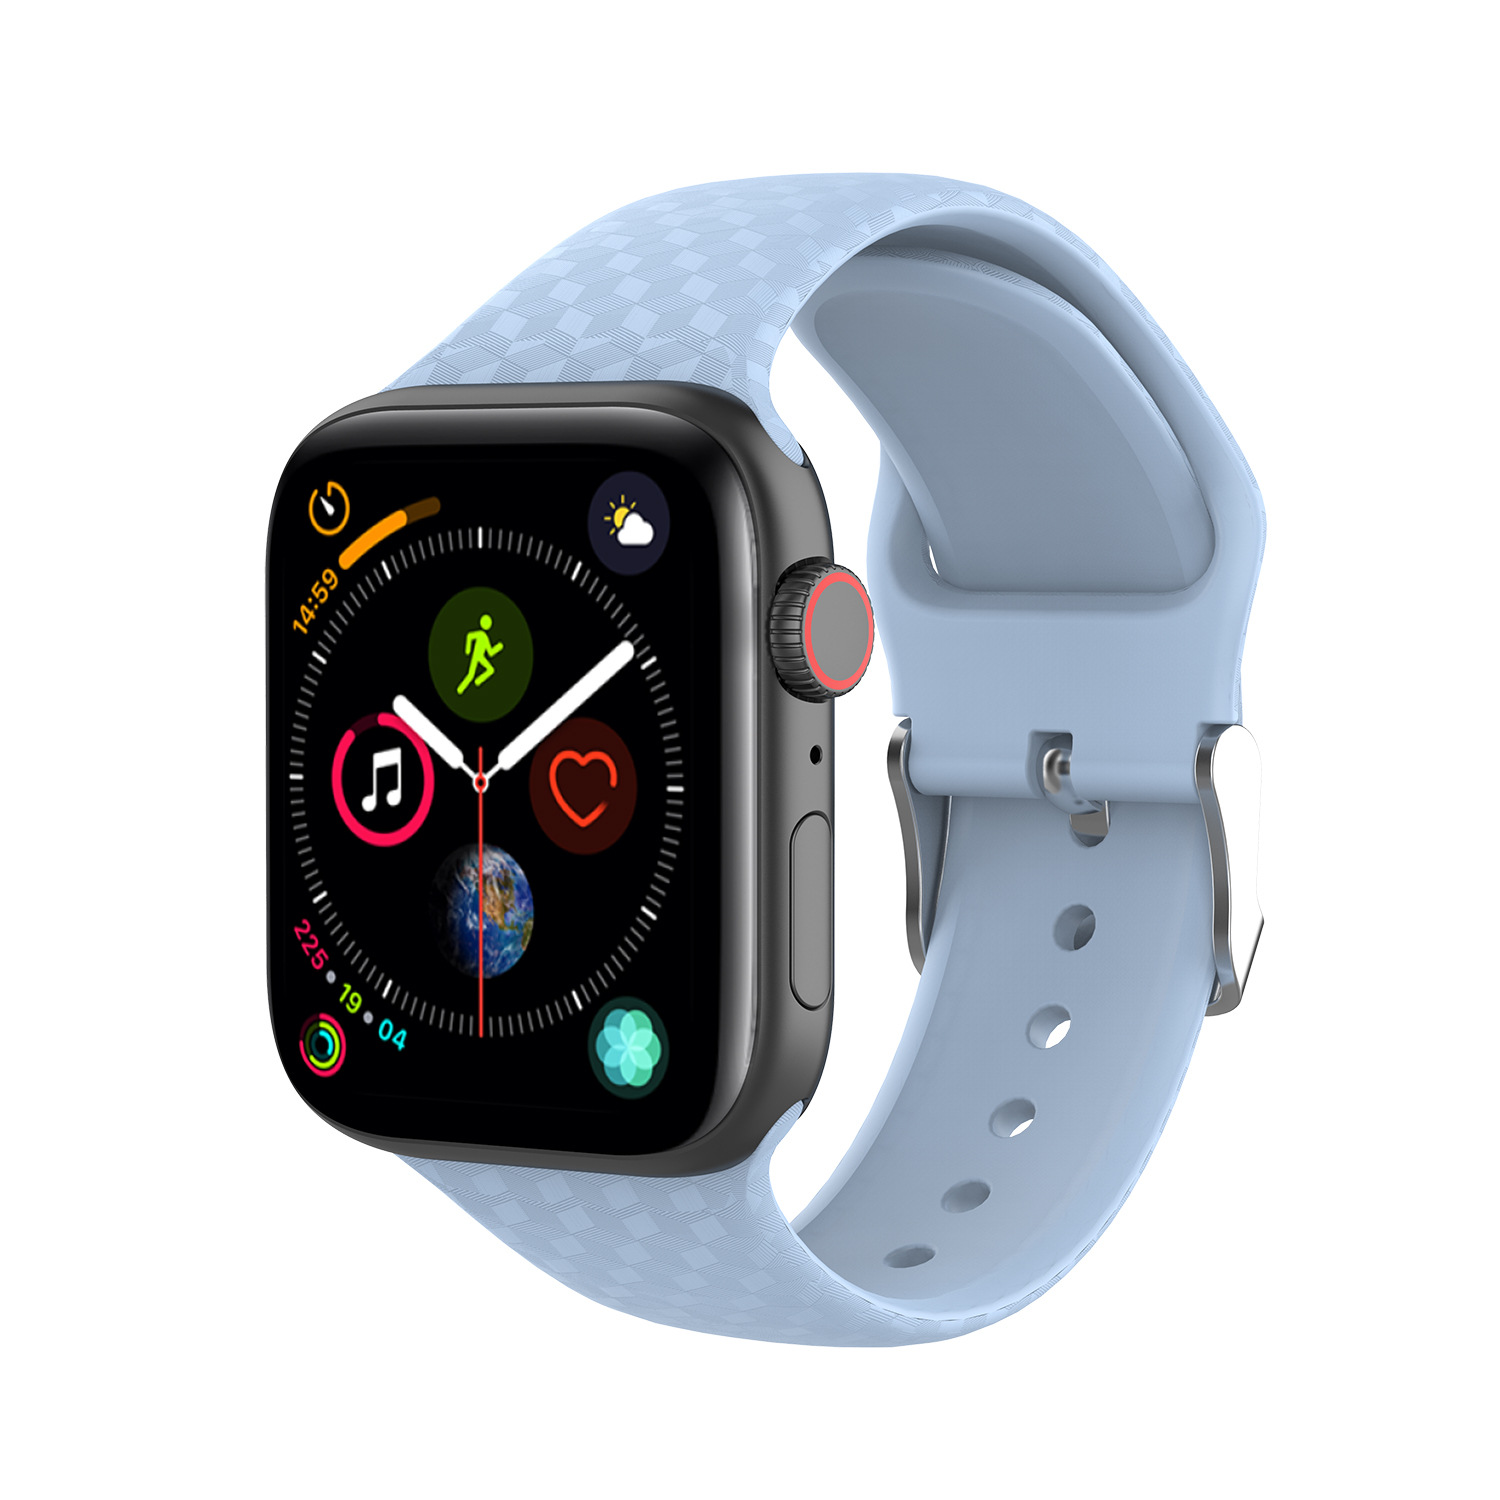 Dây Đeo Thay Thế Cho Đồng Hồ Thông Minh Apple Watch Series 1 / 2 / 3 / 4 ( Size 38 / 40 mm ) Kiểu dáng thể thao